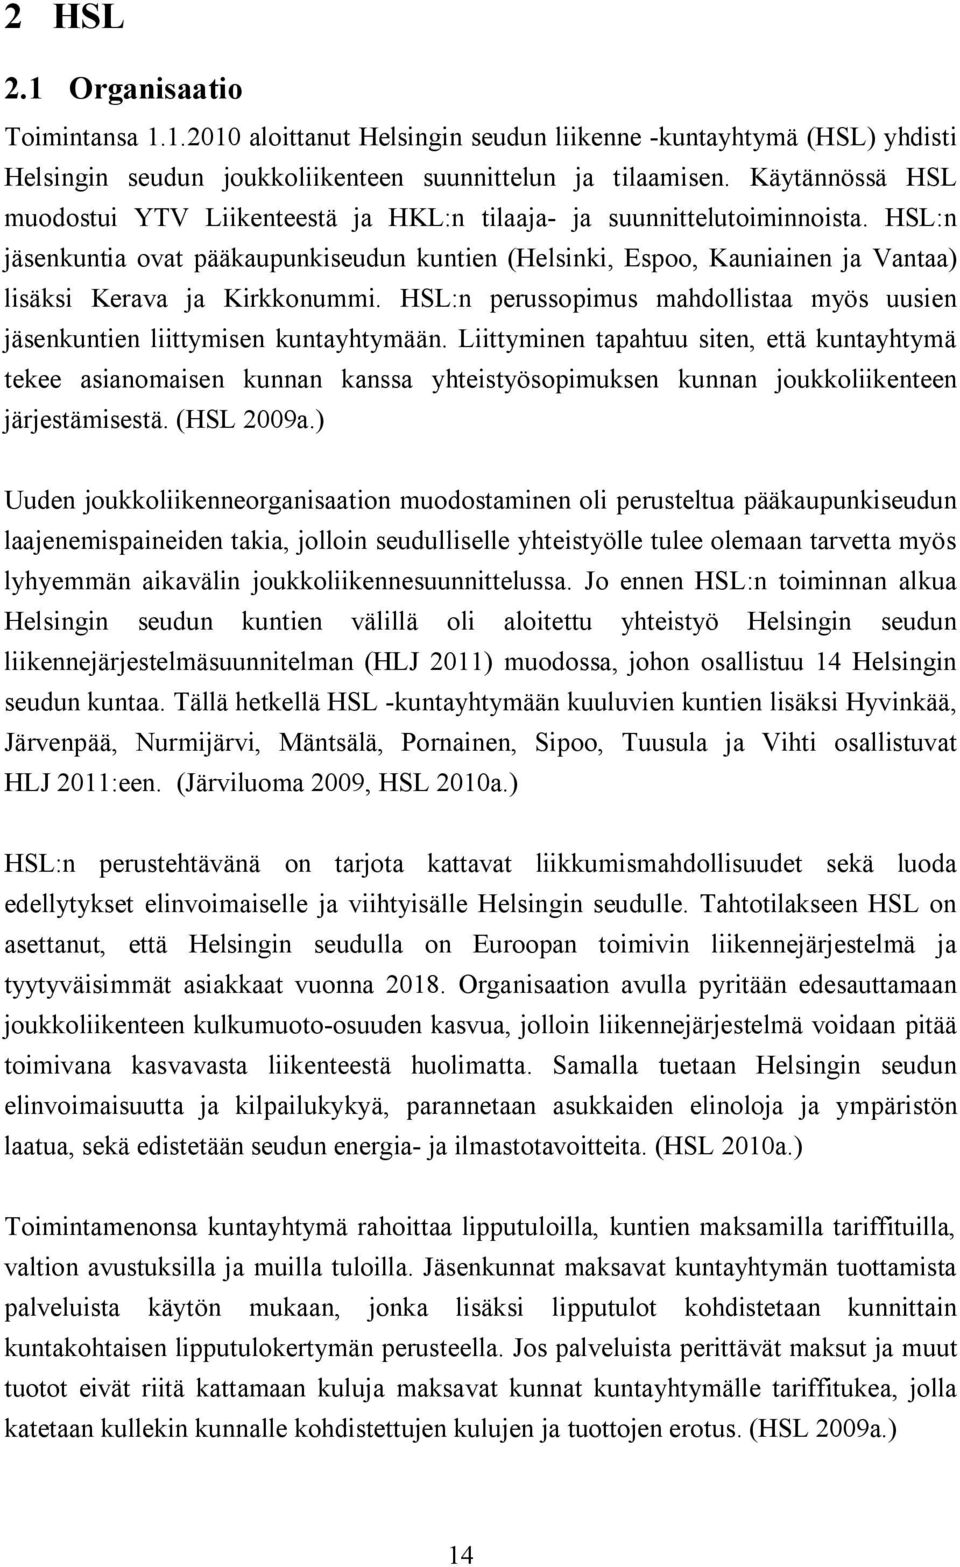 HSL:n jäsenkuntia ovat pääkaupunkiseudun kuntien (Helsinki, Espoo, Kauniainen ja Vantaa) lisäksi Kerava ja Kirkkonummi.